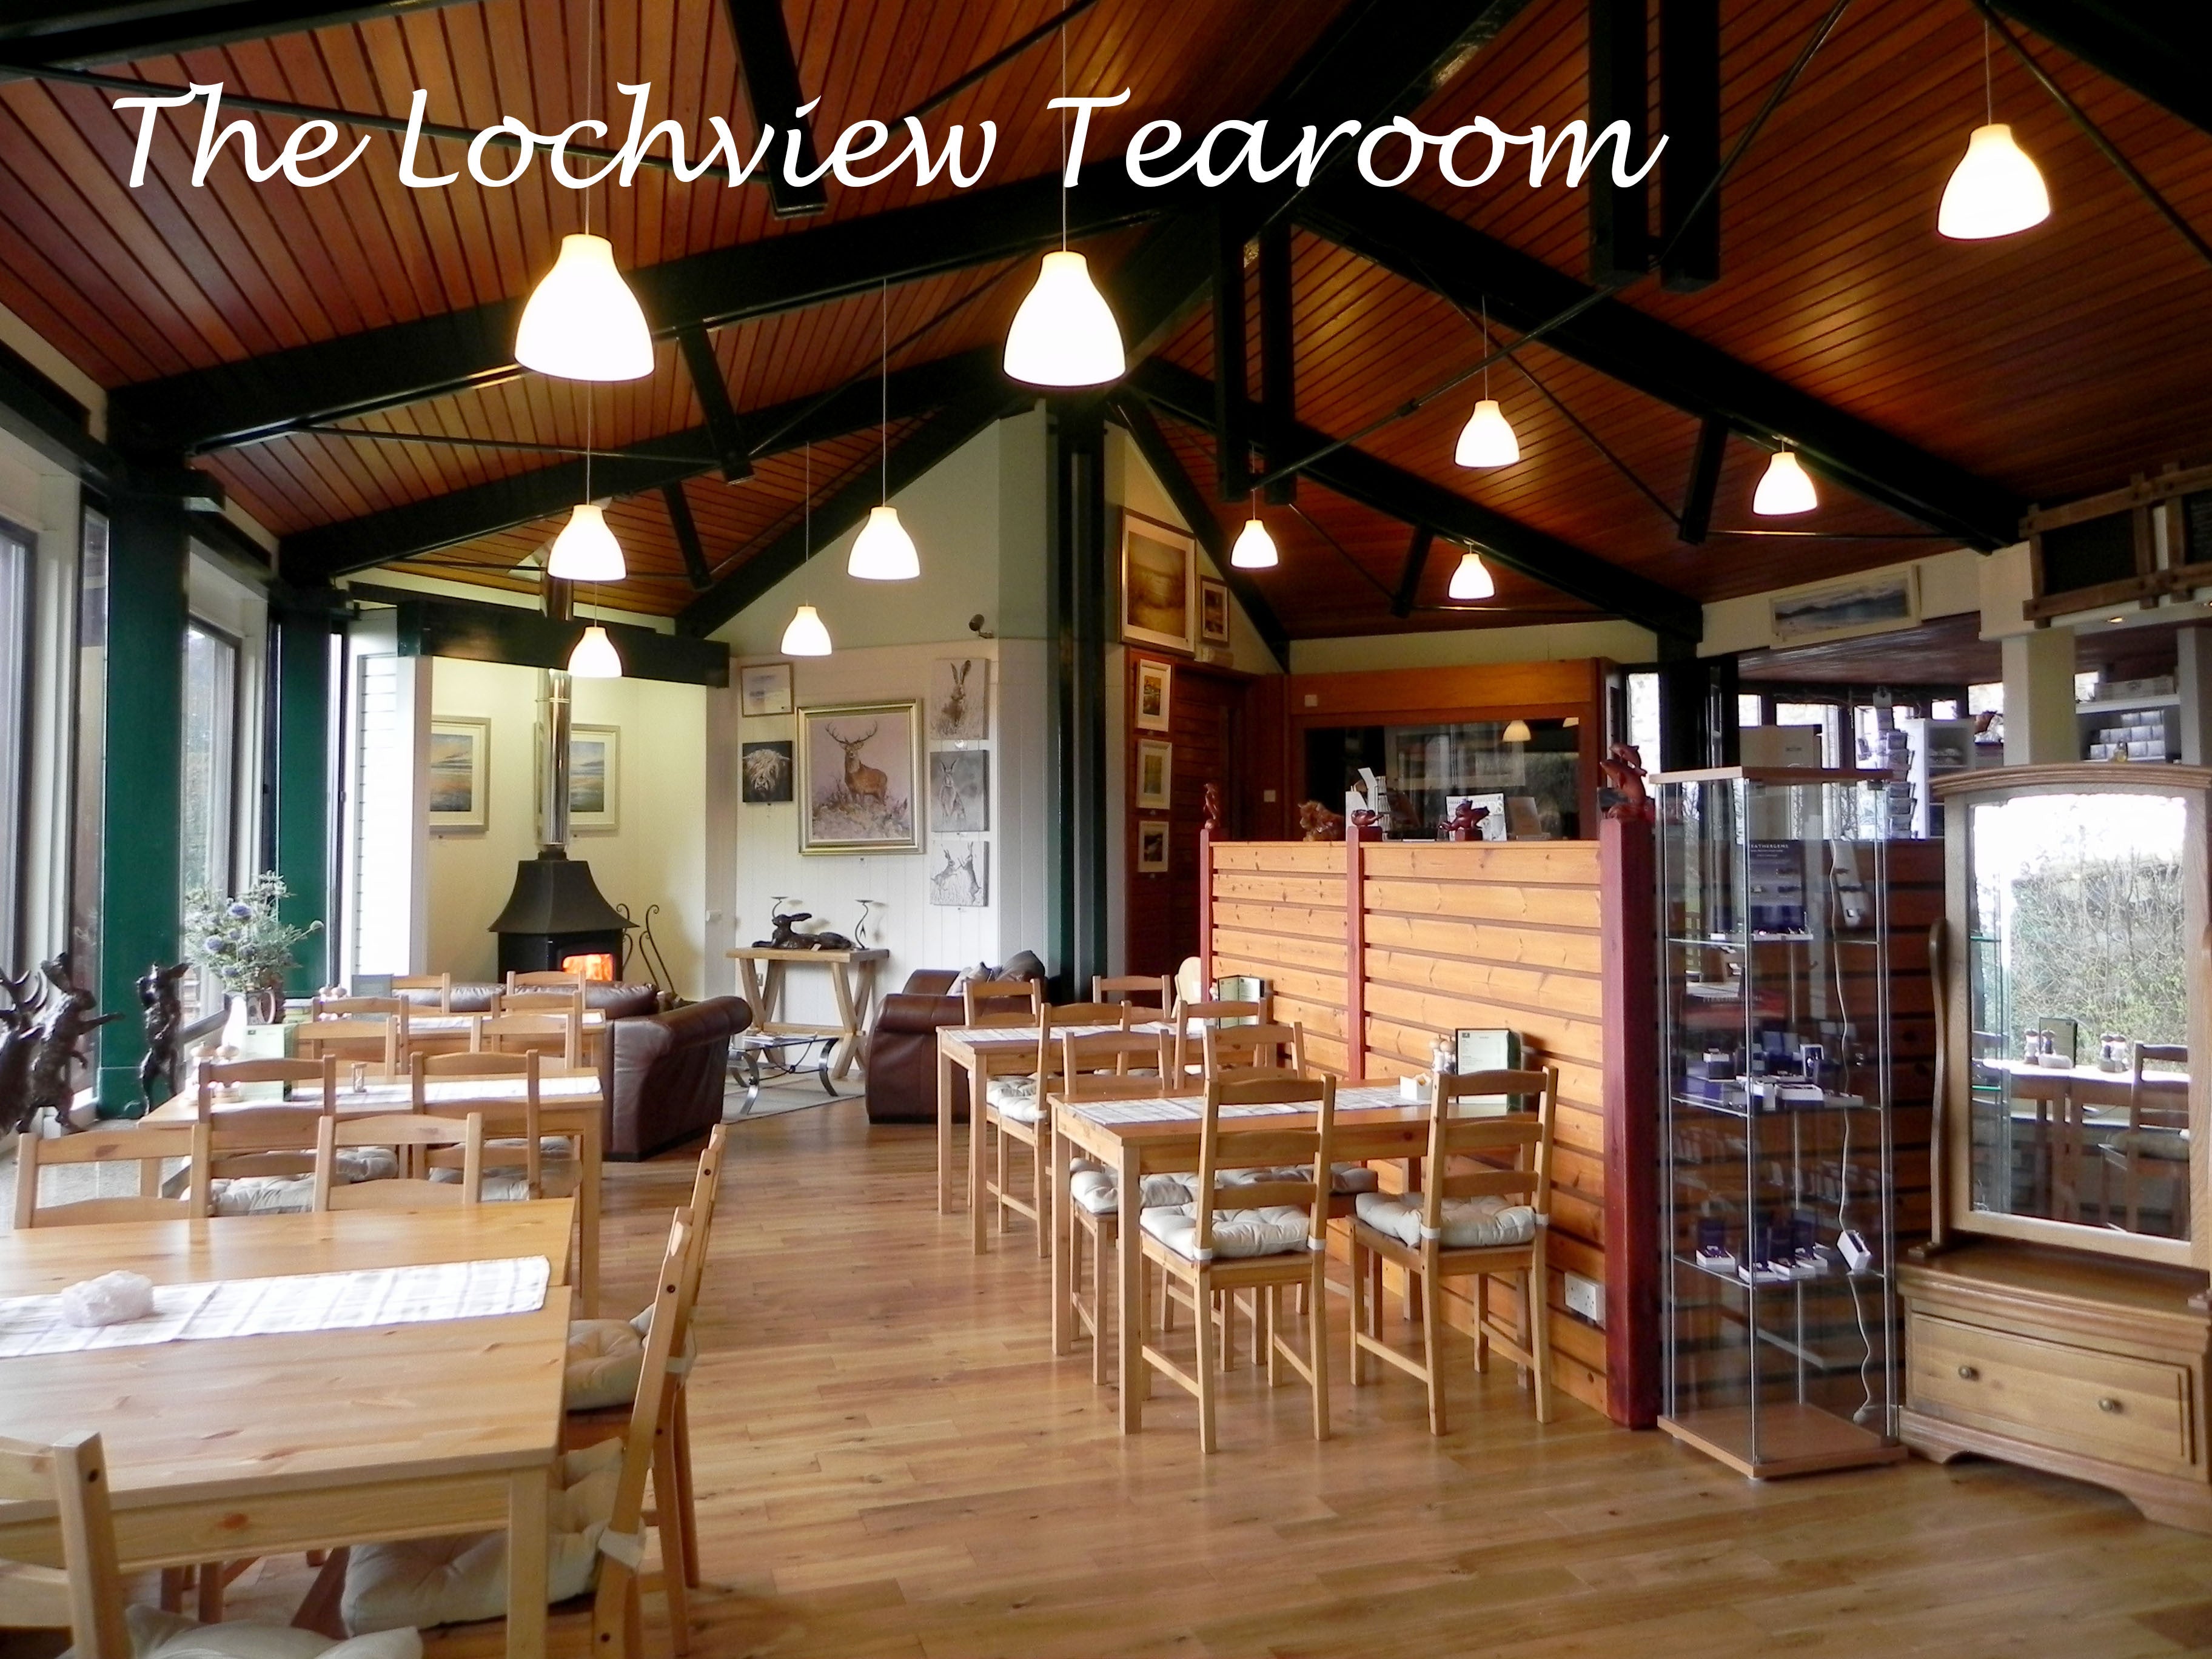 Lochview Tearoom